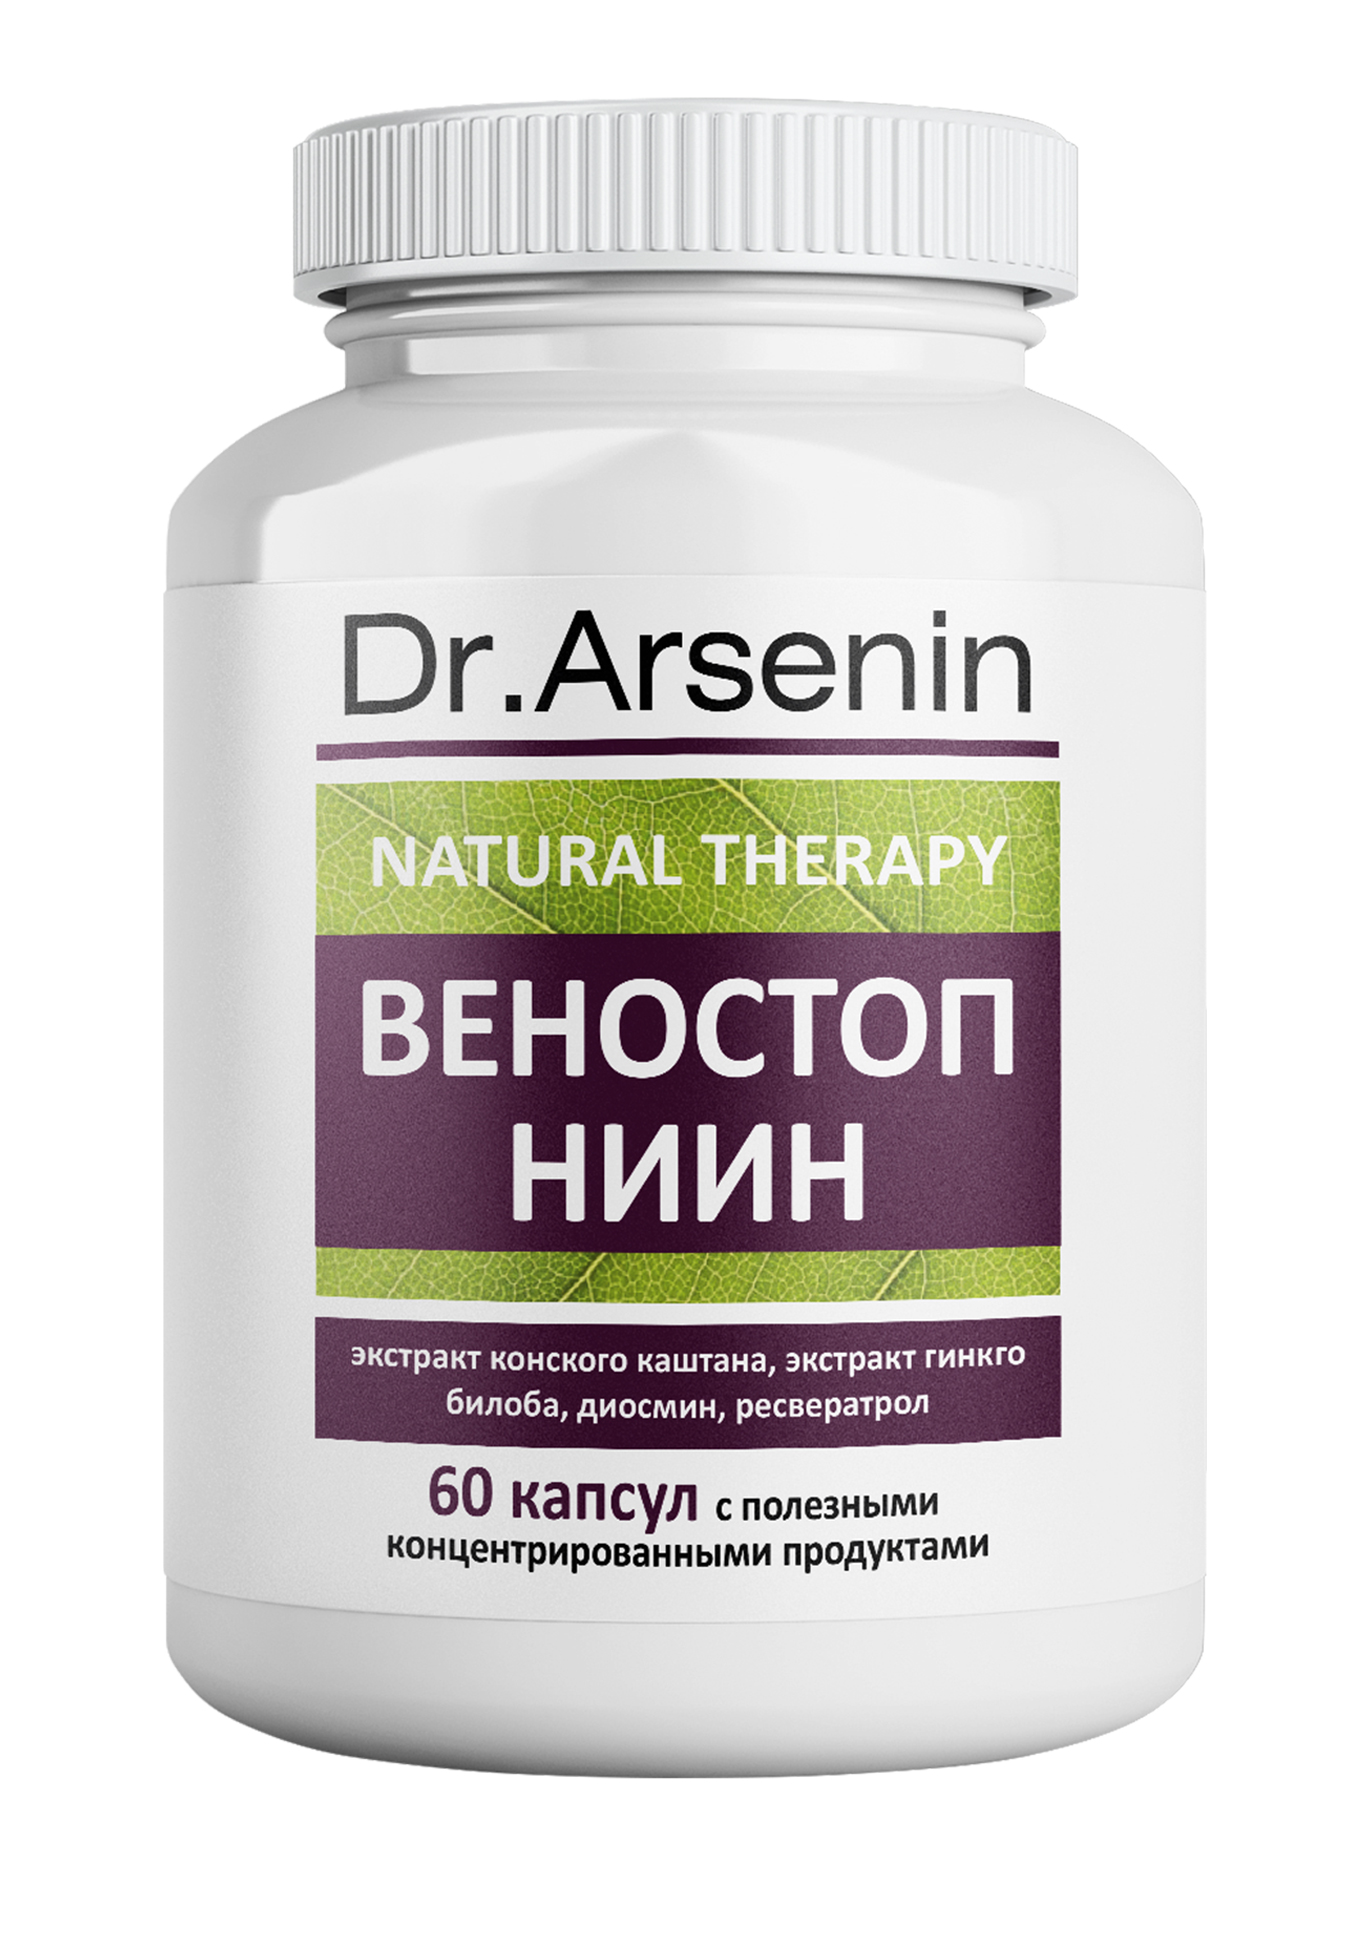 dr arsenin концентрированный пищевой продукт красный женьшень Dr. Arsenin. ВЕНОСТОП НИИН